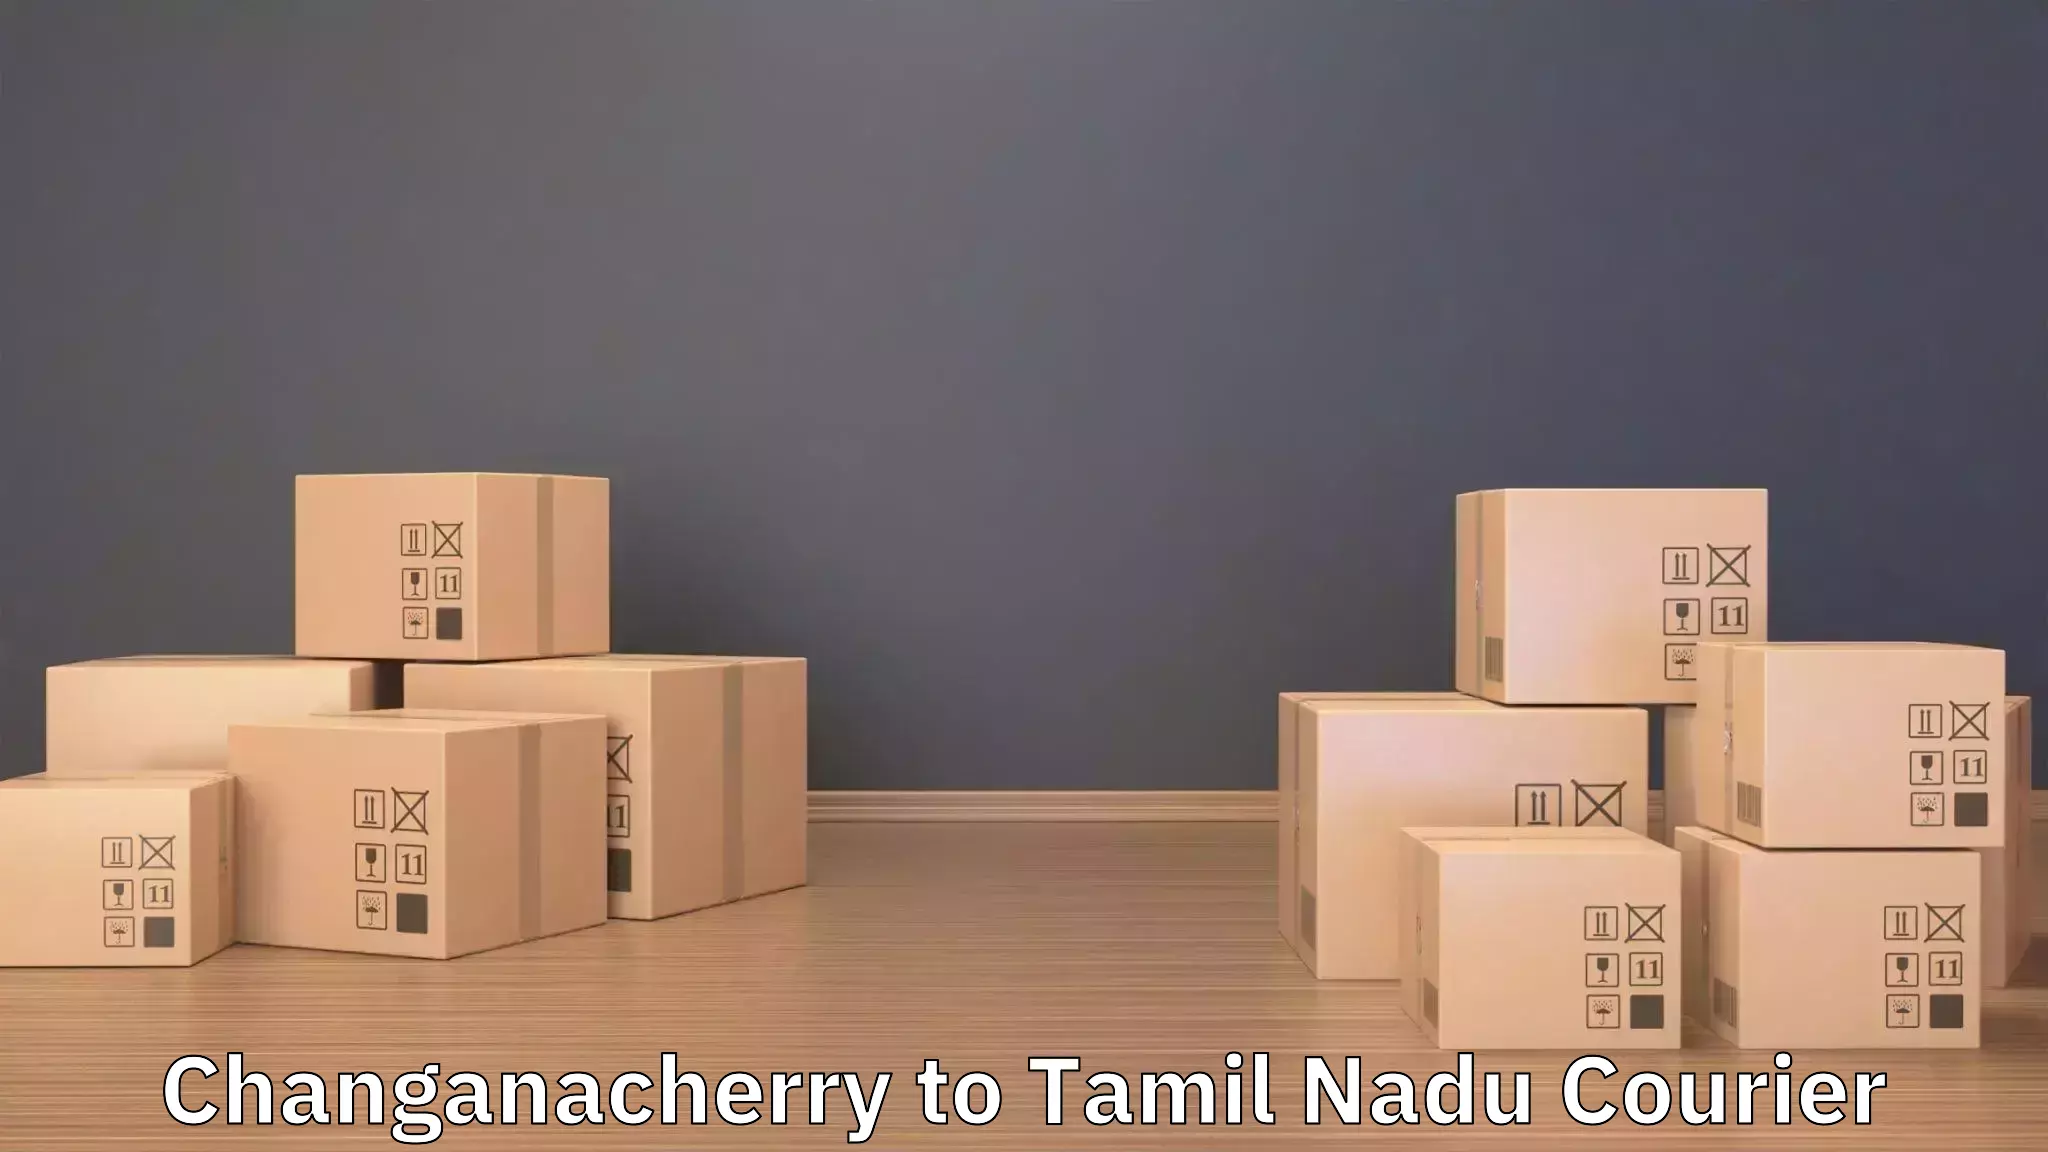 Professional moving assistance Changanacherry to Gujiliamparai